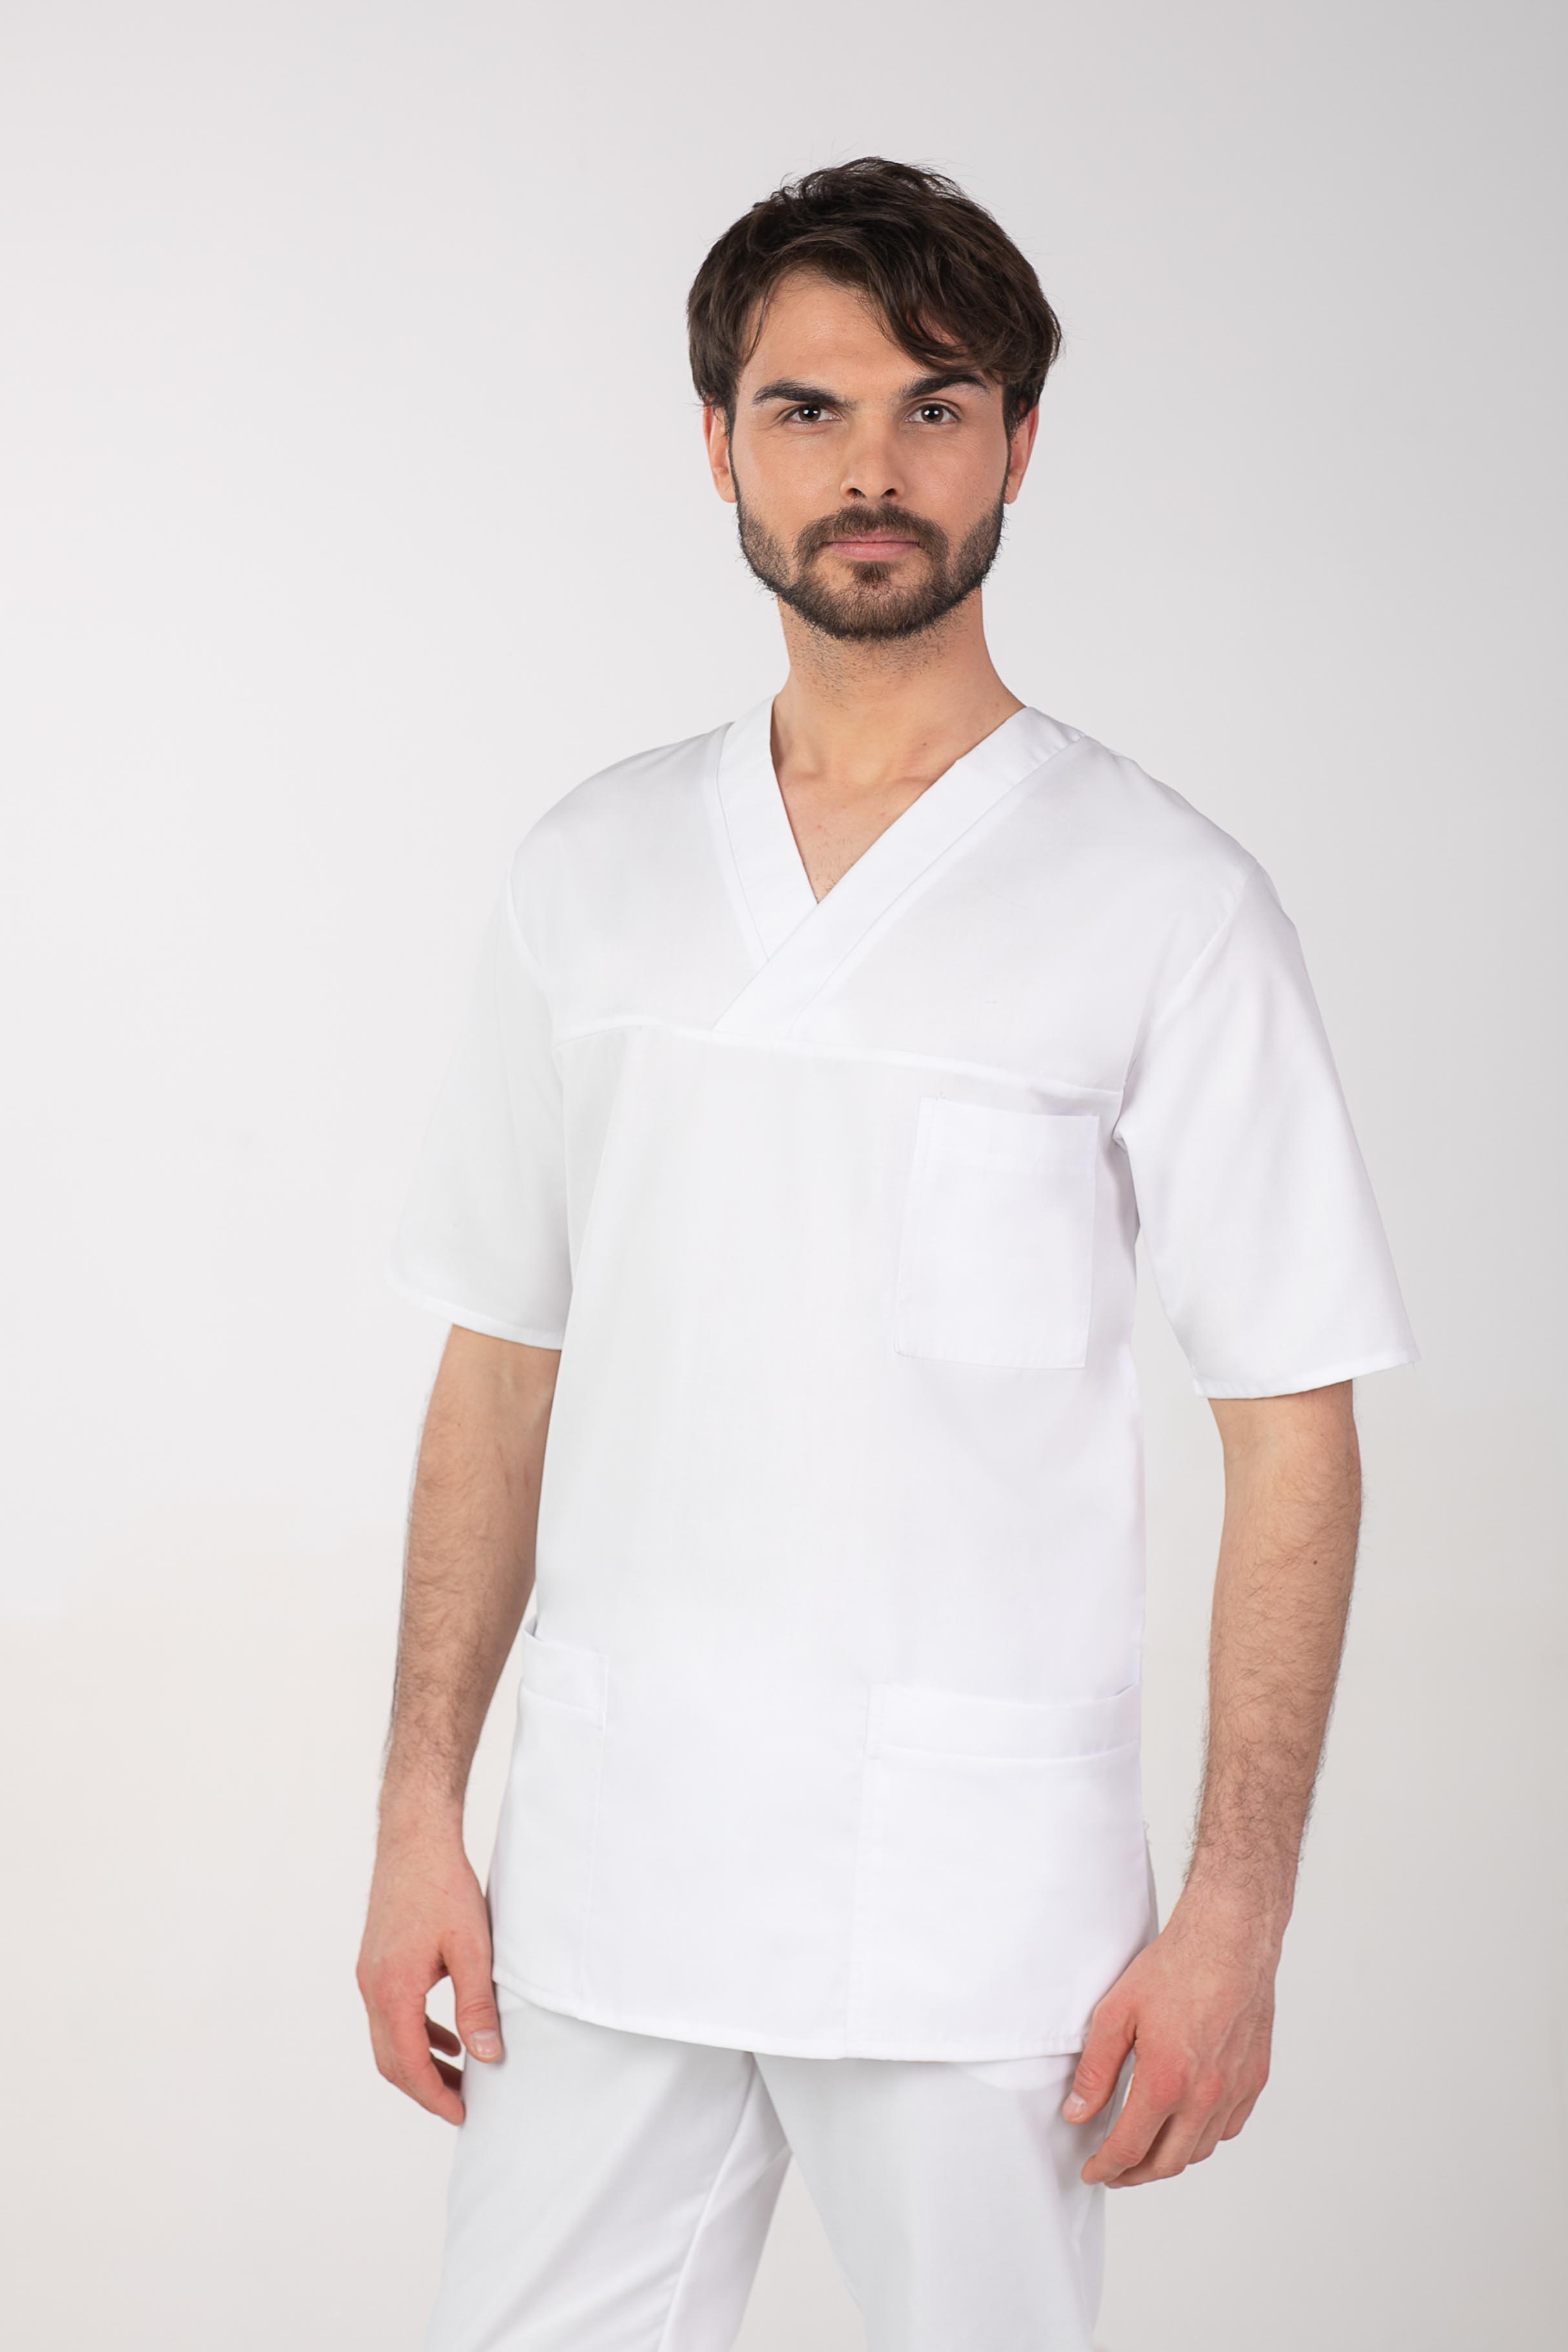 Pánská barevná zdravotnická košile M-074C, bílá